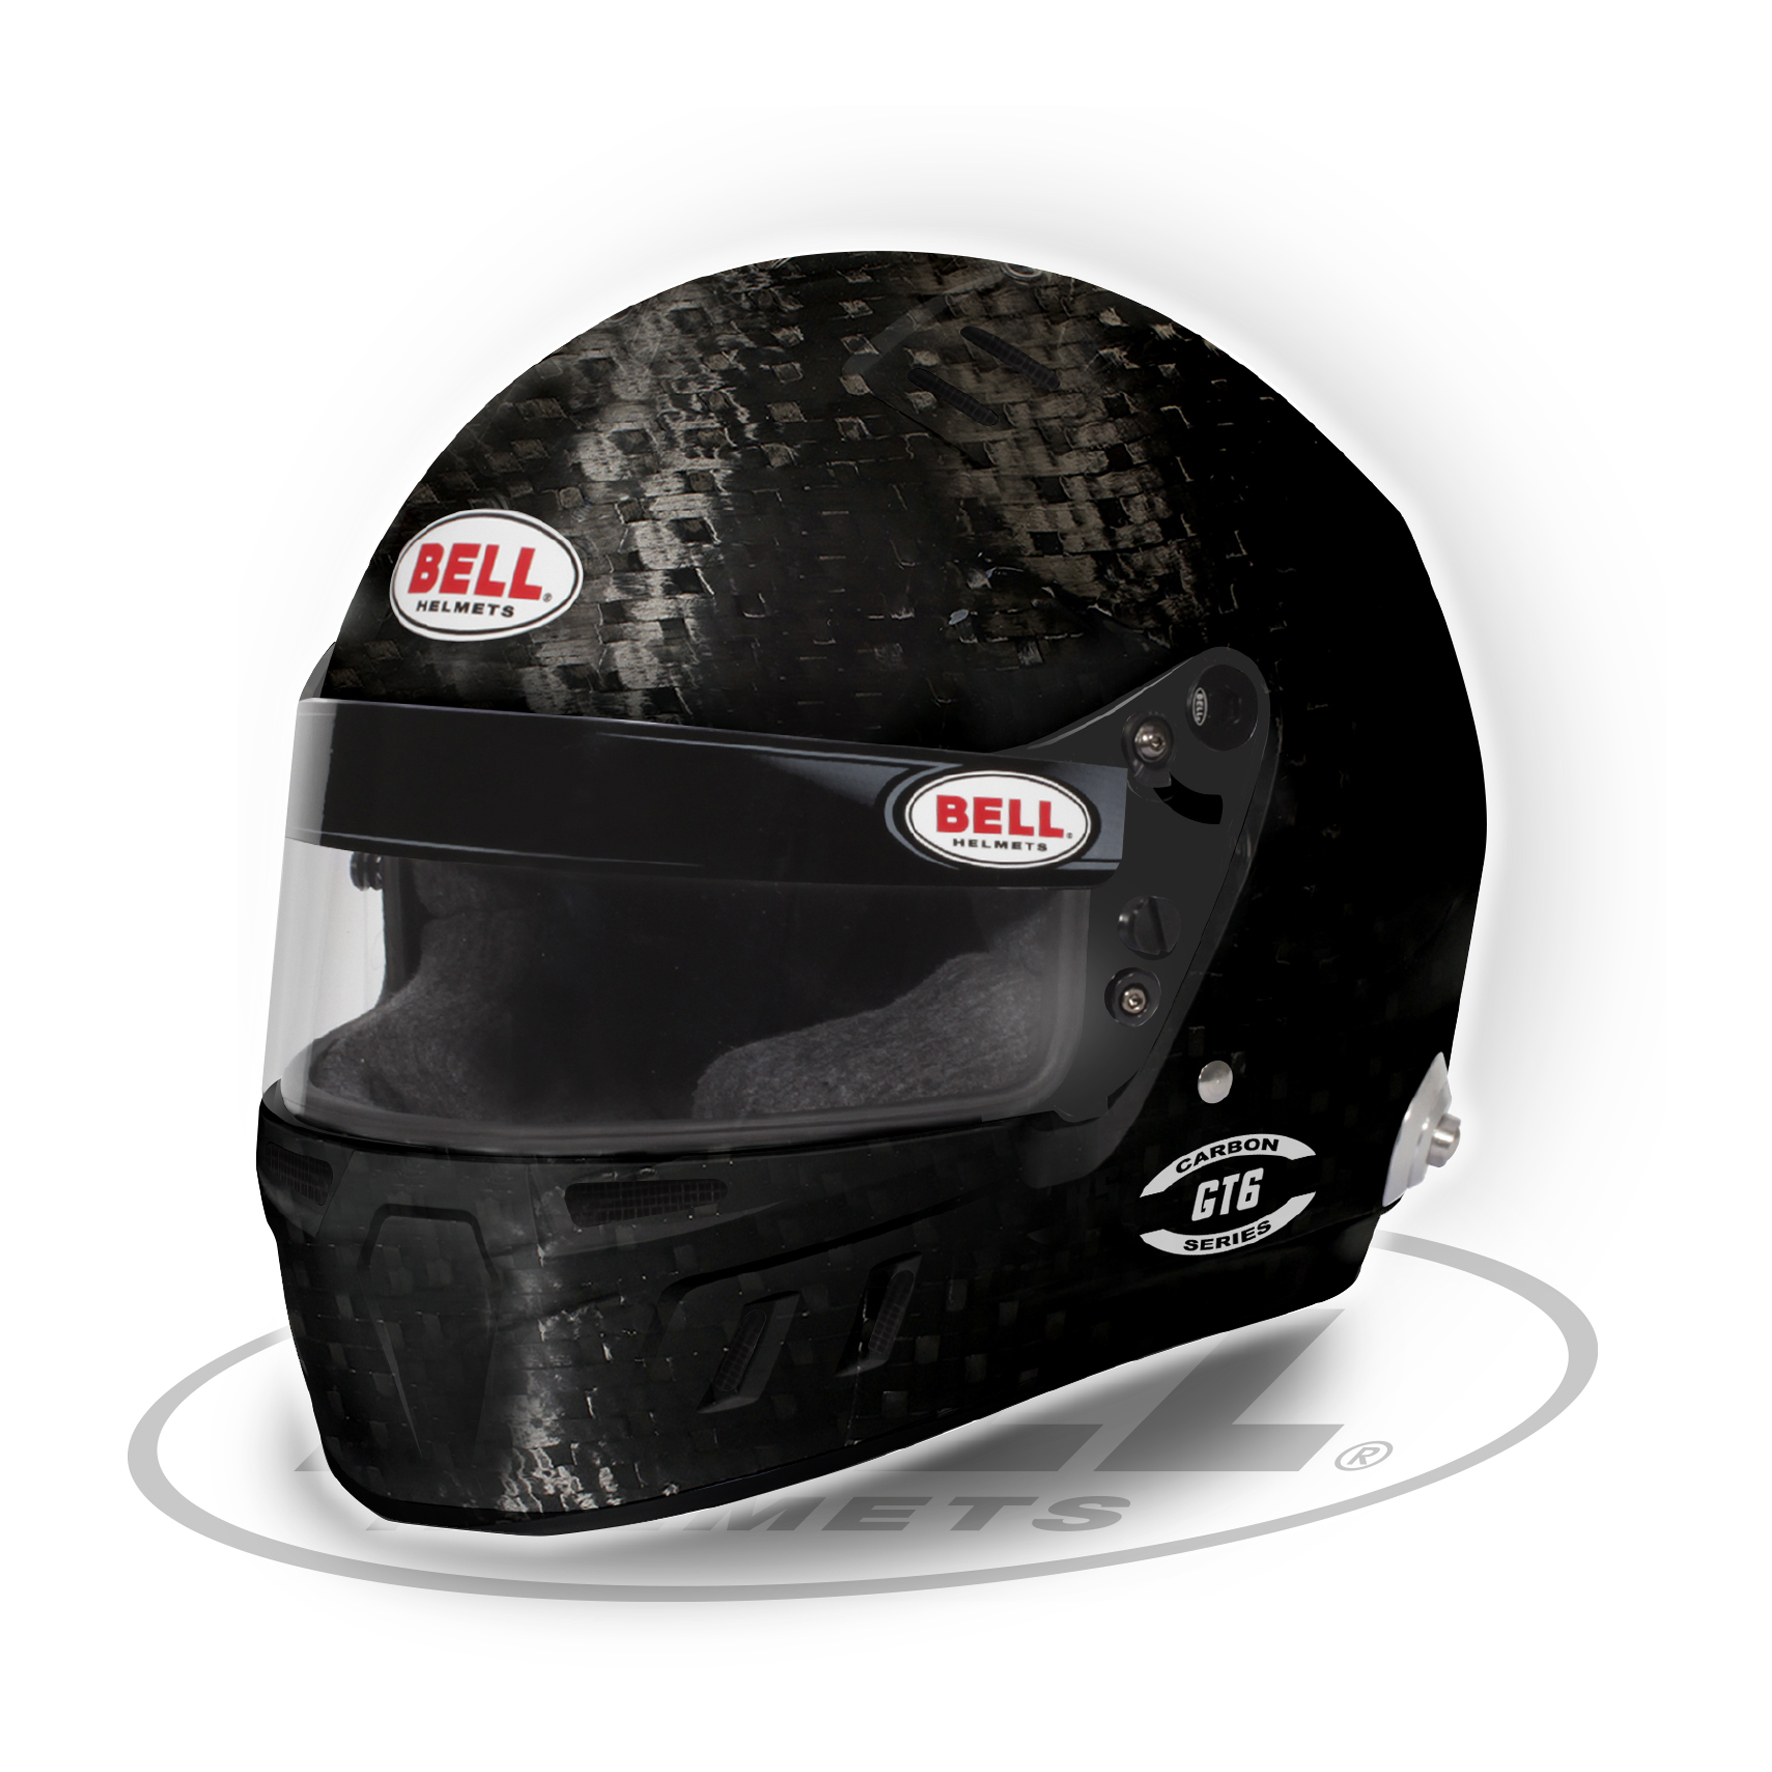 Helm GT6 CARBON HANS (RD) Ultraleichtes Premium Carbon